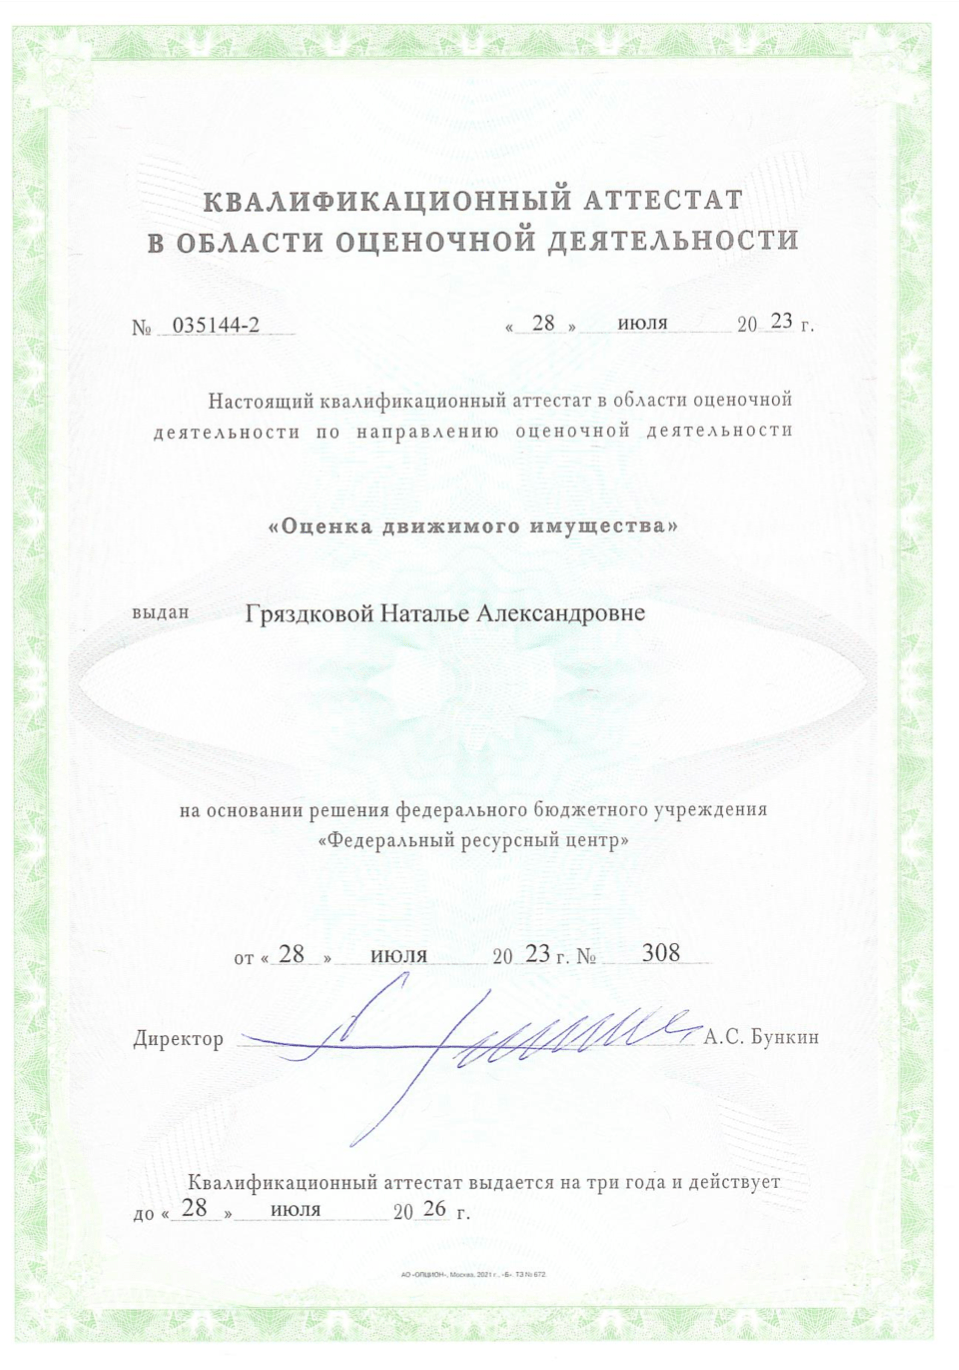 Полис страхования ответственности оценщика Бураковой А. А.